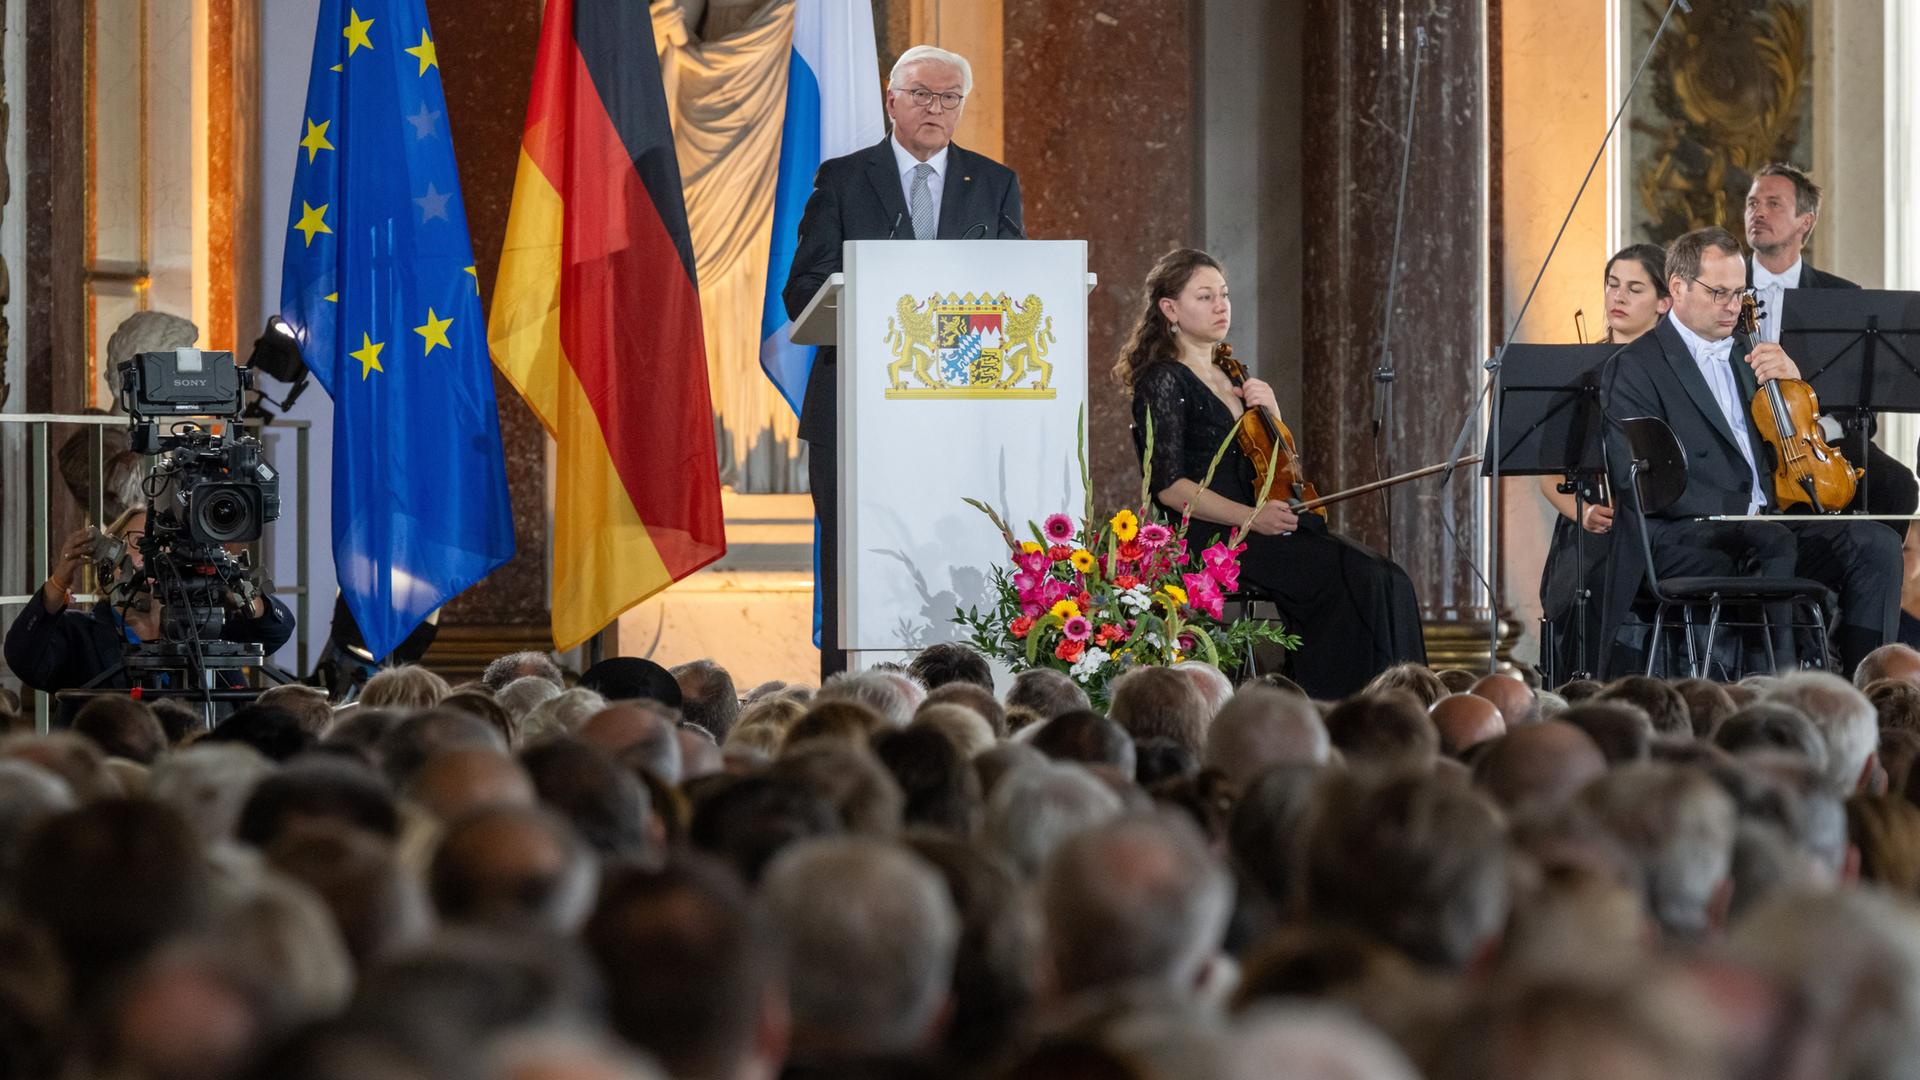 Bundespräsident Frank-Walter Steinmeier spricht auf dem Festakt zum 75. Jahrestag des Verfassungskonvent im Spiegelsaal des Alten Schloss auf der Insel Herrenchiemsee.